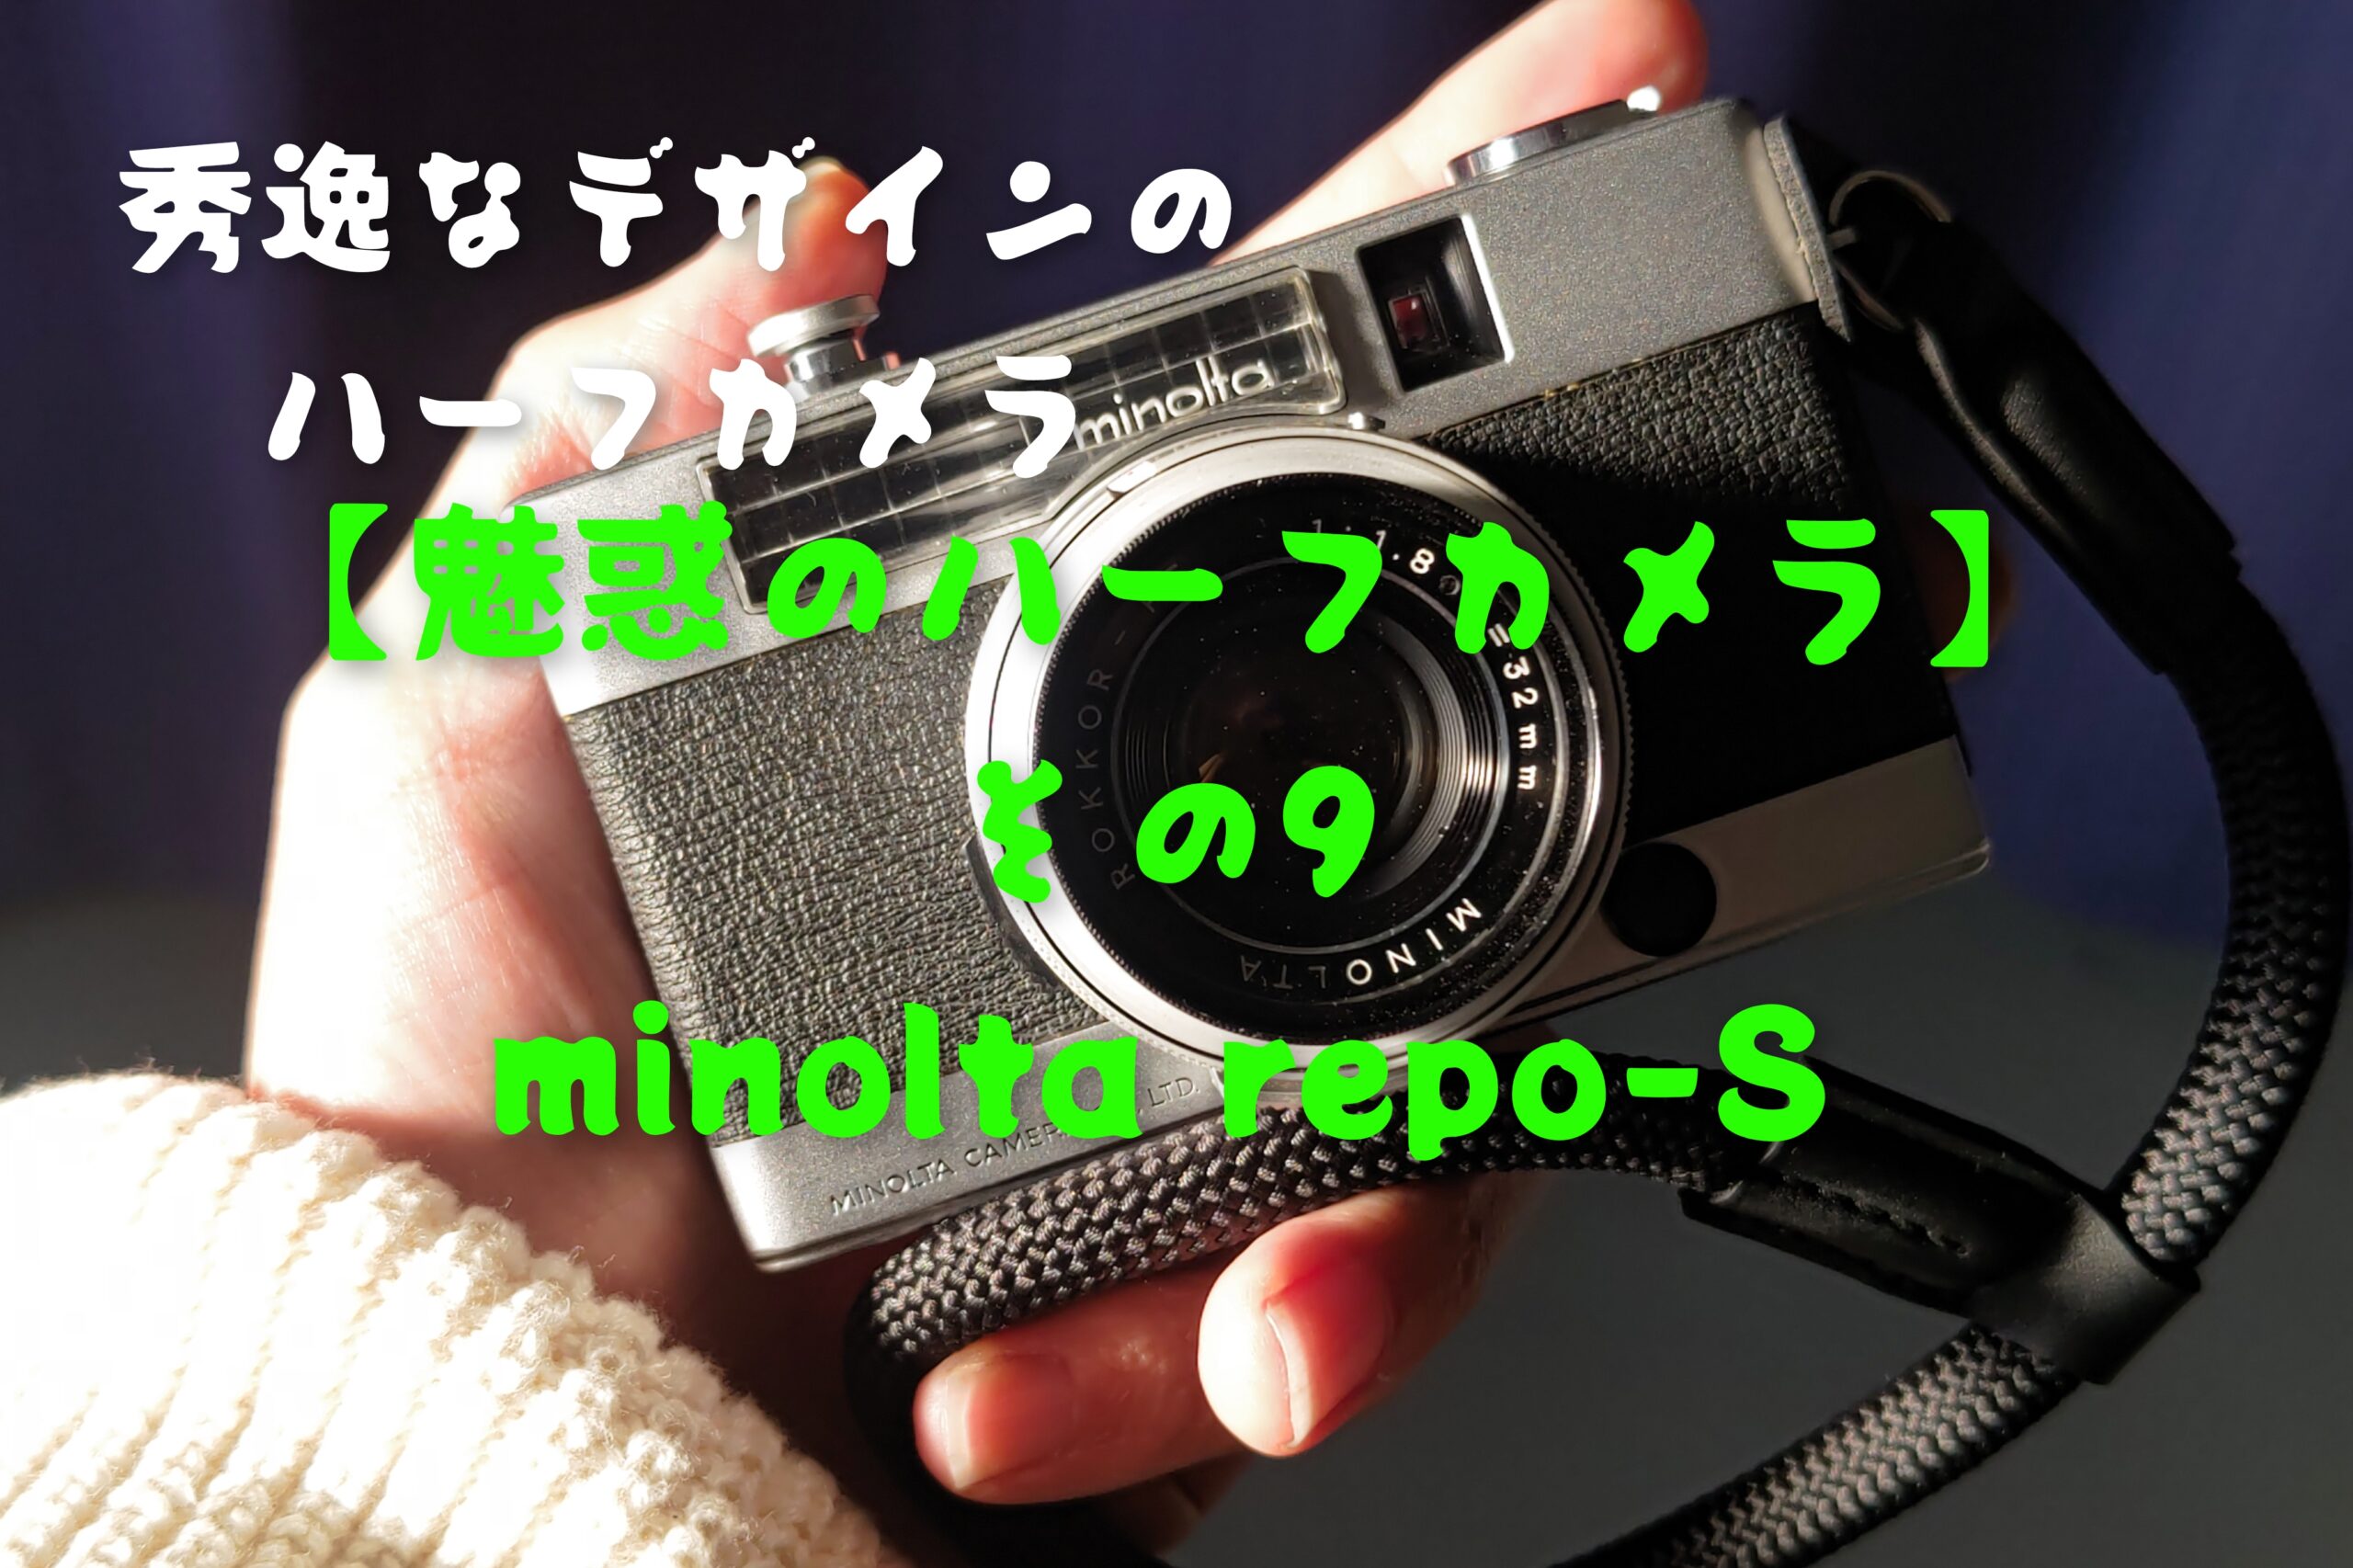 魅惑のハーフカメラ】その9 minolta repo-S - PHOTOWALK~写真やカメラの話~